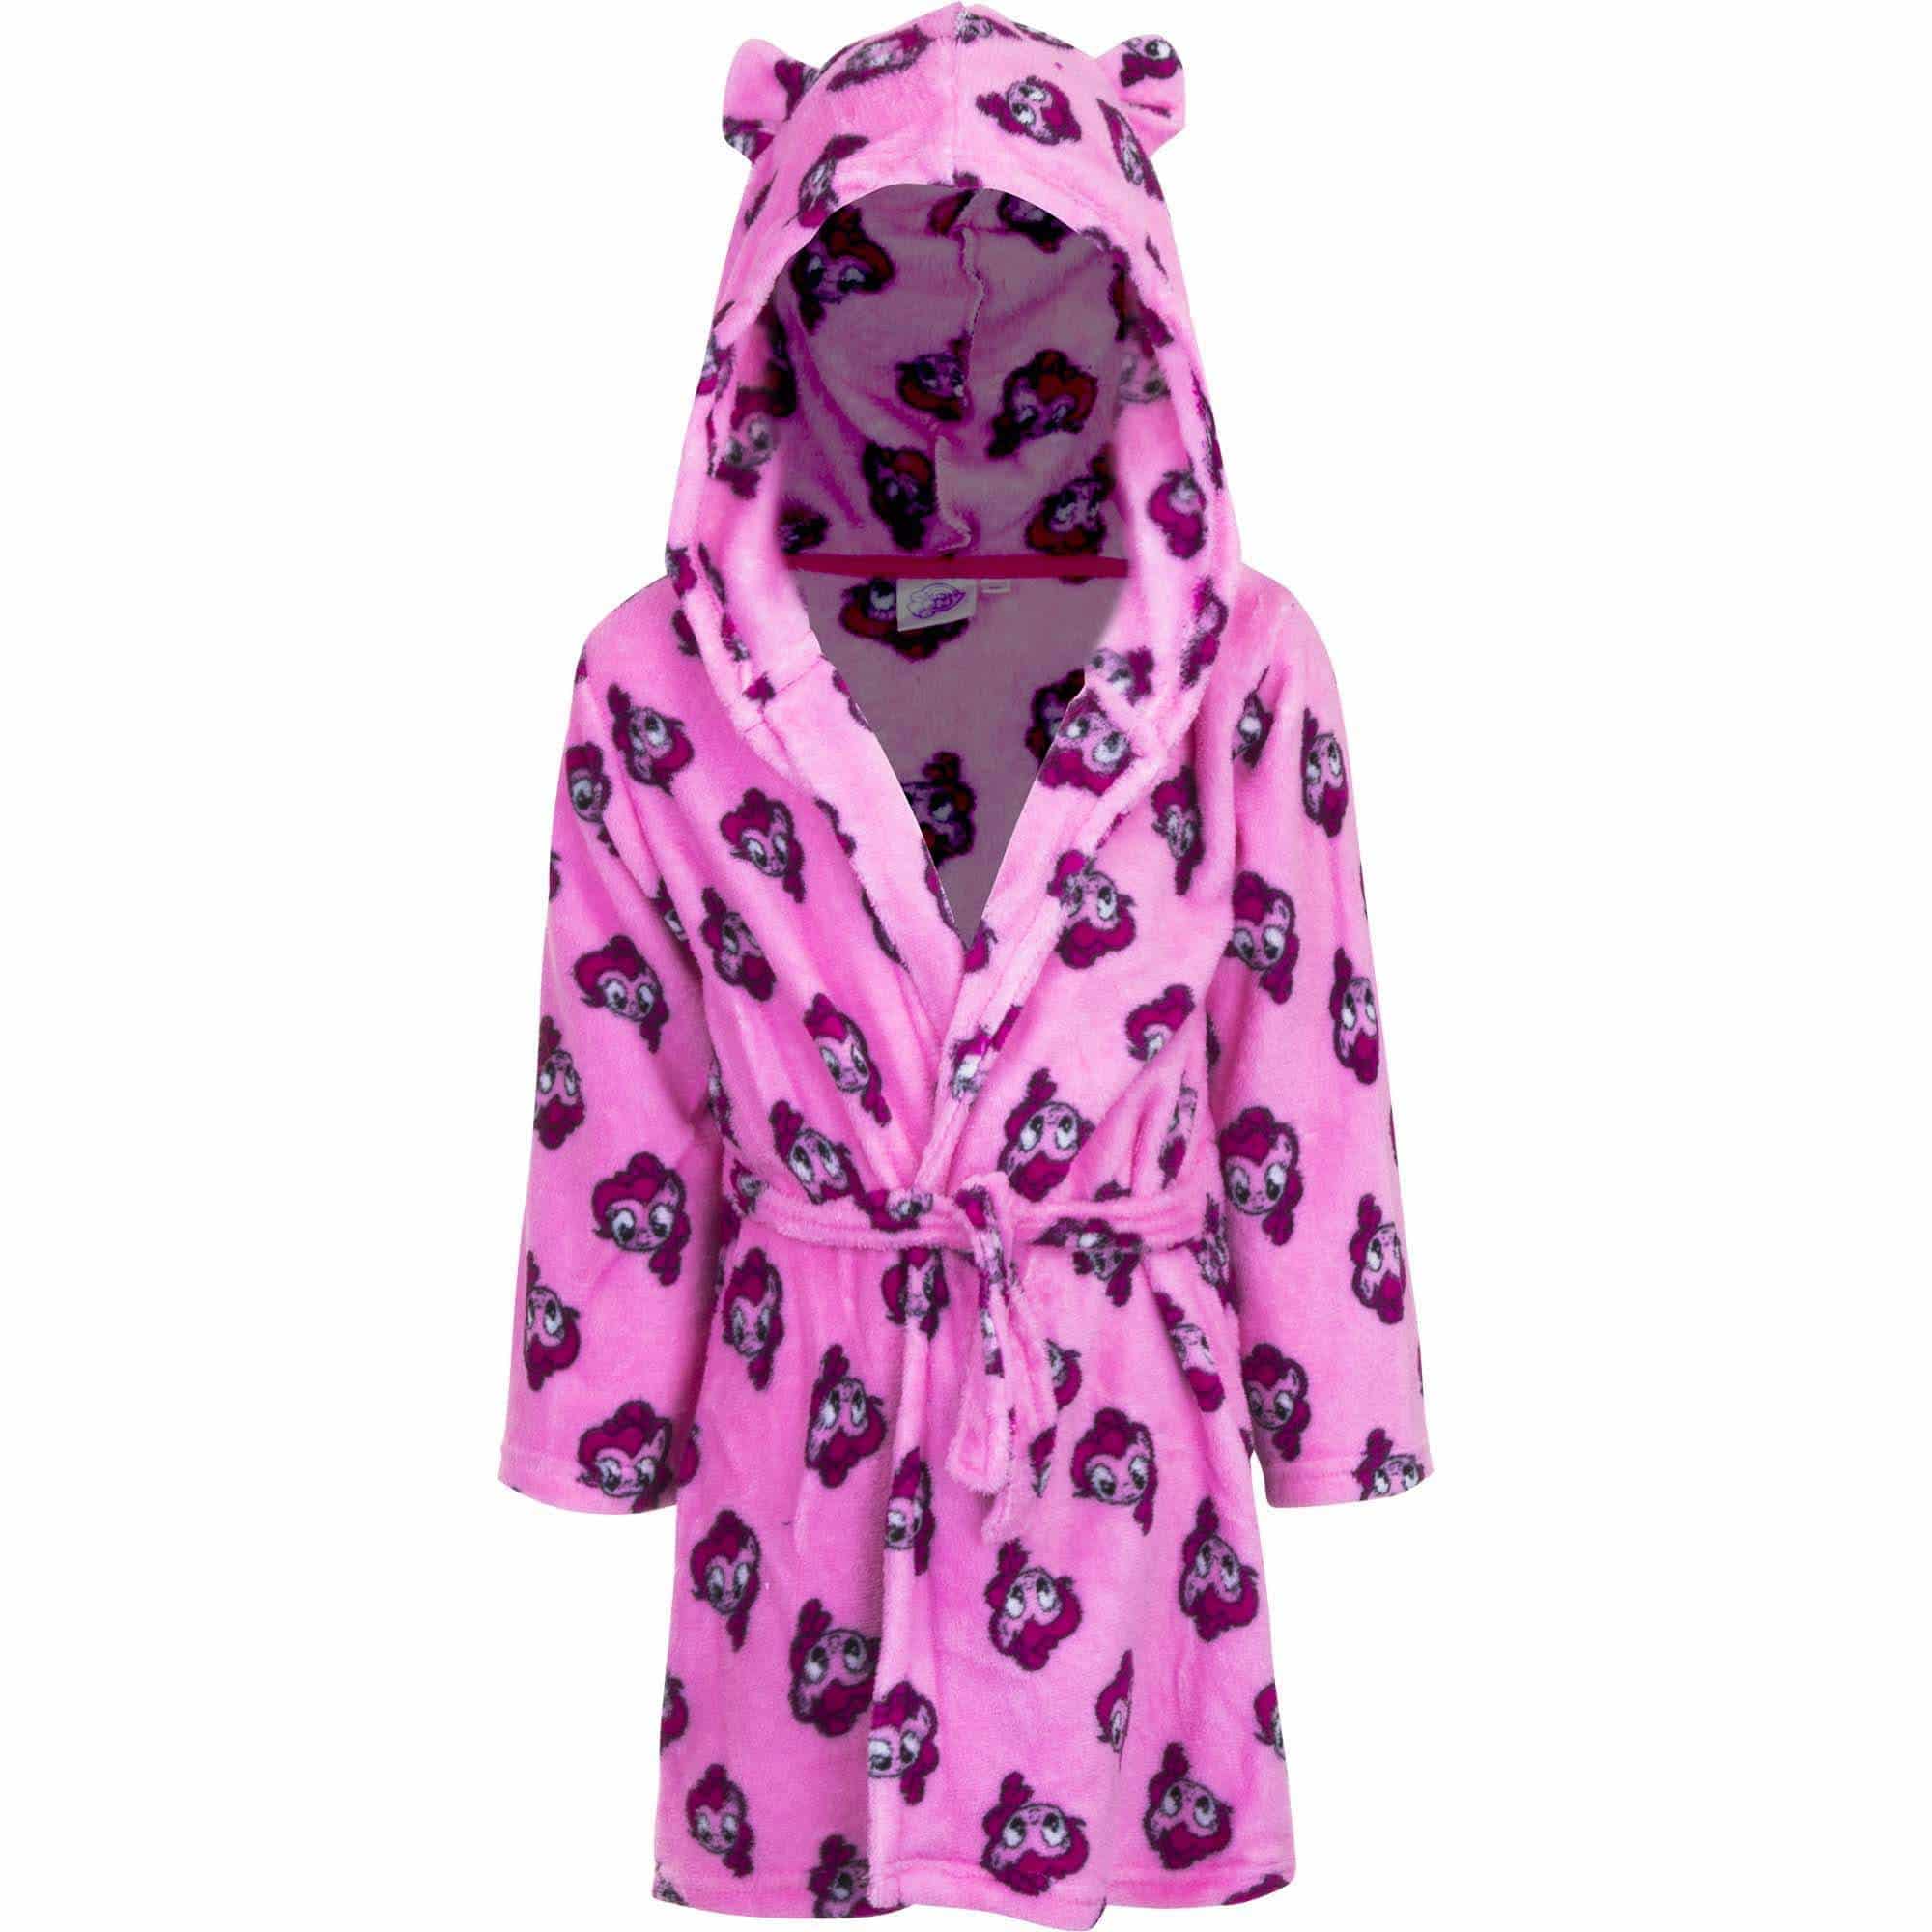 Kids Girls Dressing Gown Size 2-3 3-4 4-5 5-6 7-8 9-10 11-12 13 Years  Fleece UK | eBay